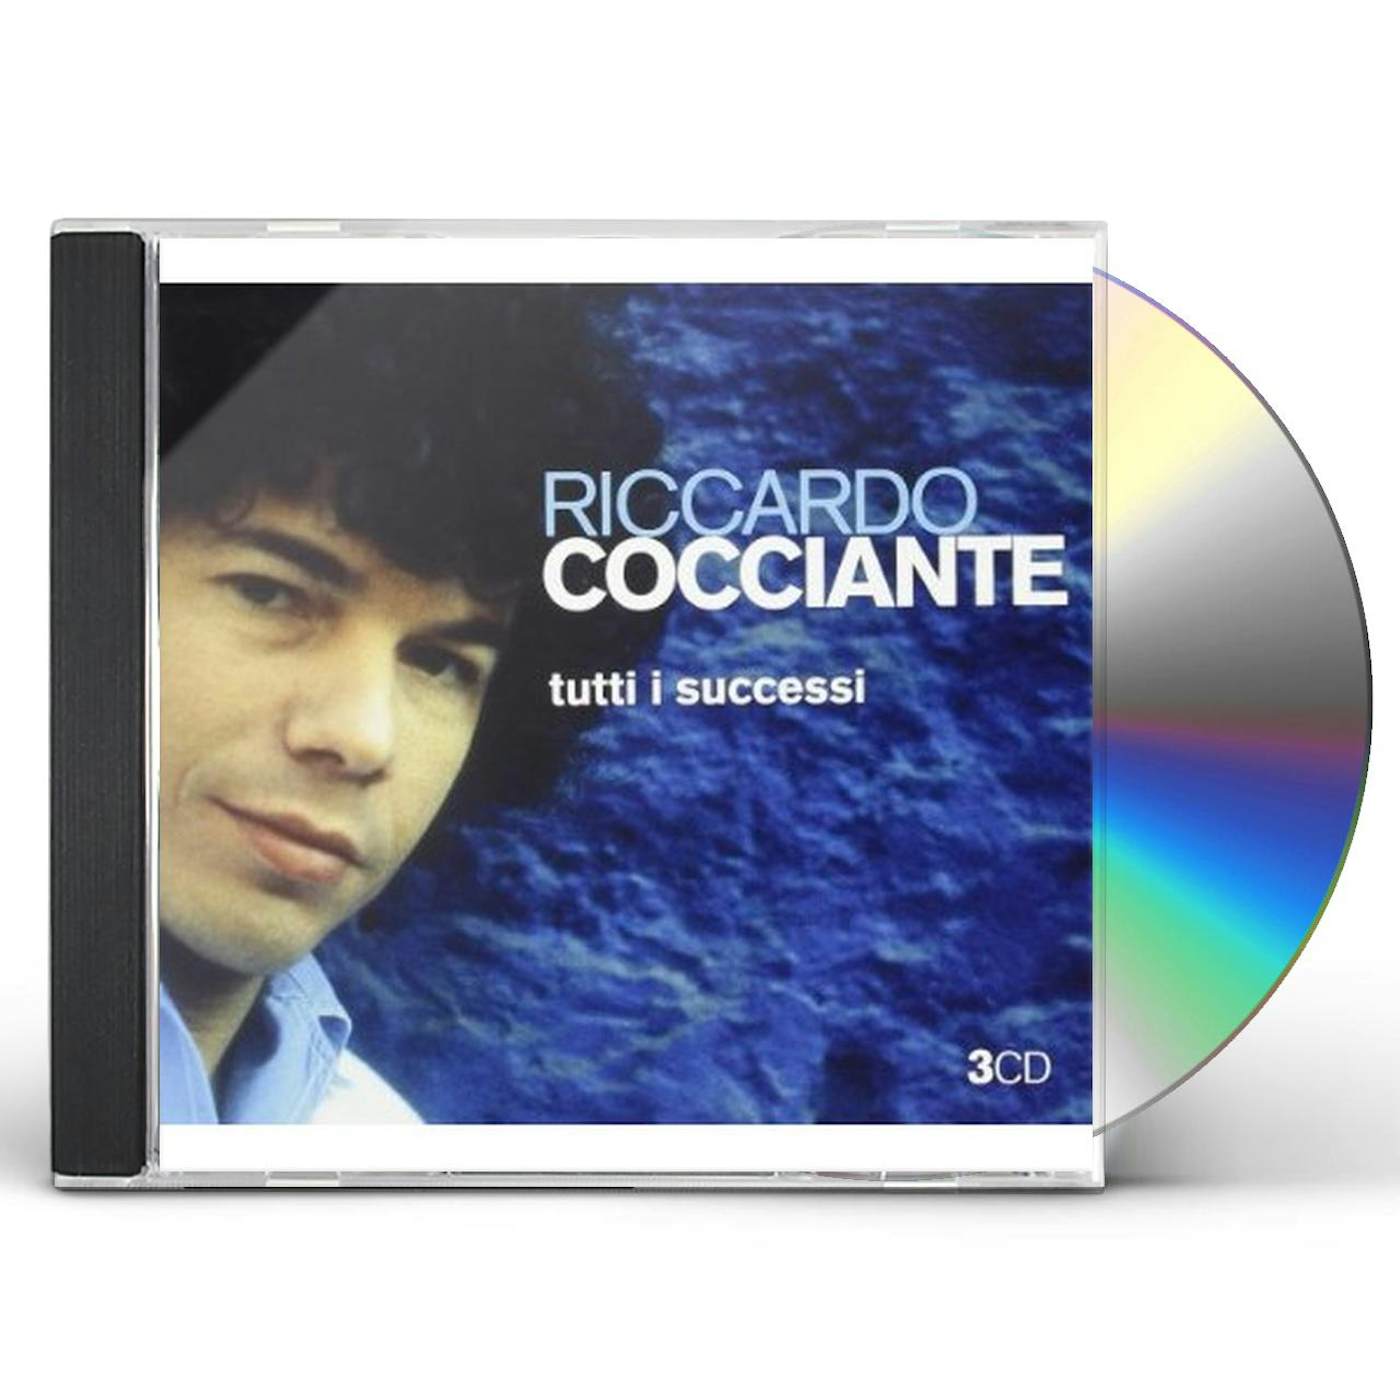 Riccardo Cocciante TUTTI I SUCCESSI CD